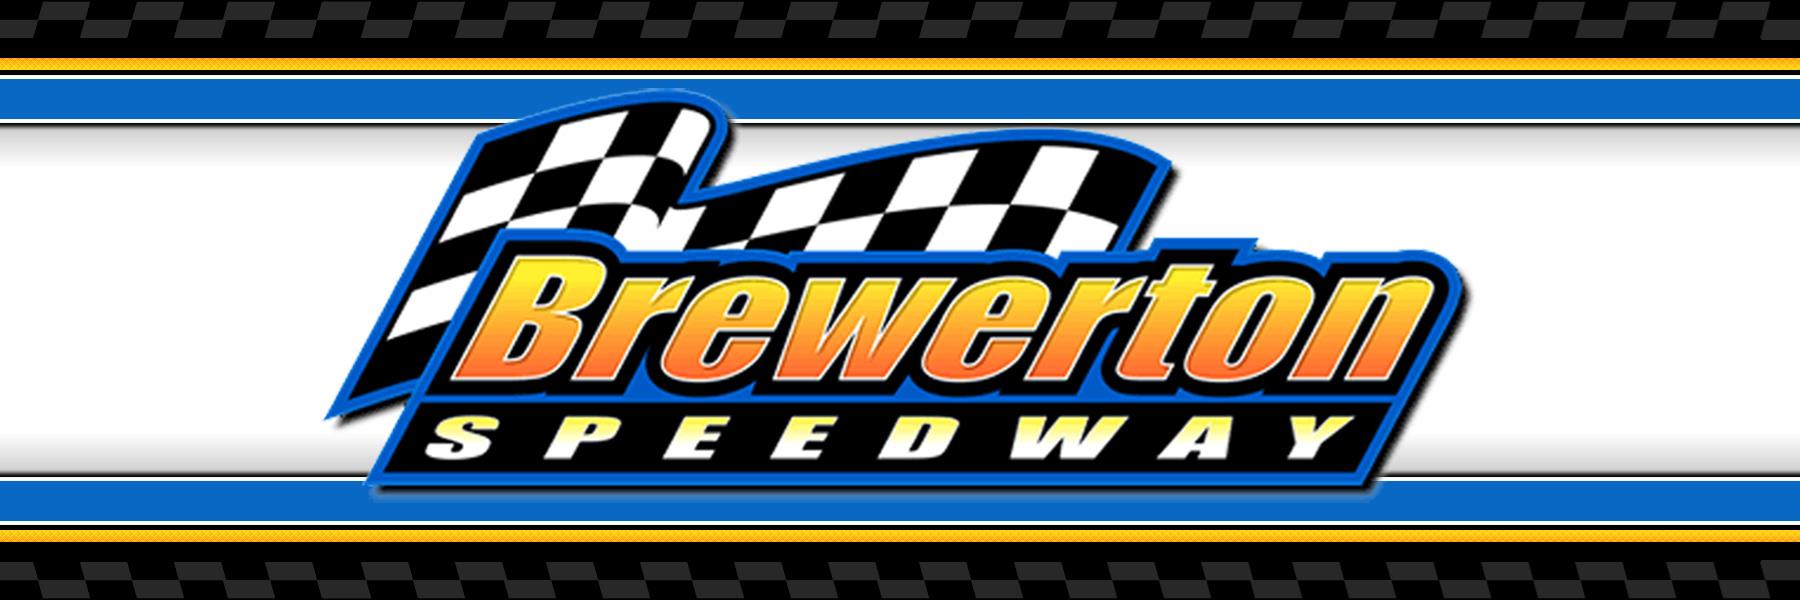 7/22/2022 - Brewerton Speedway